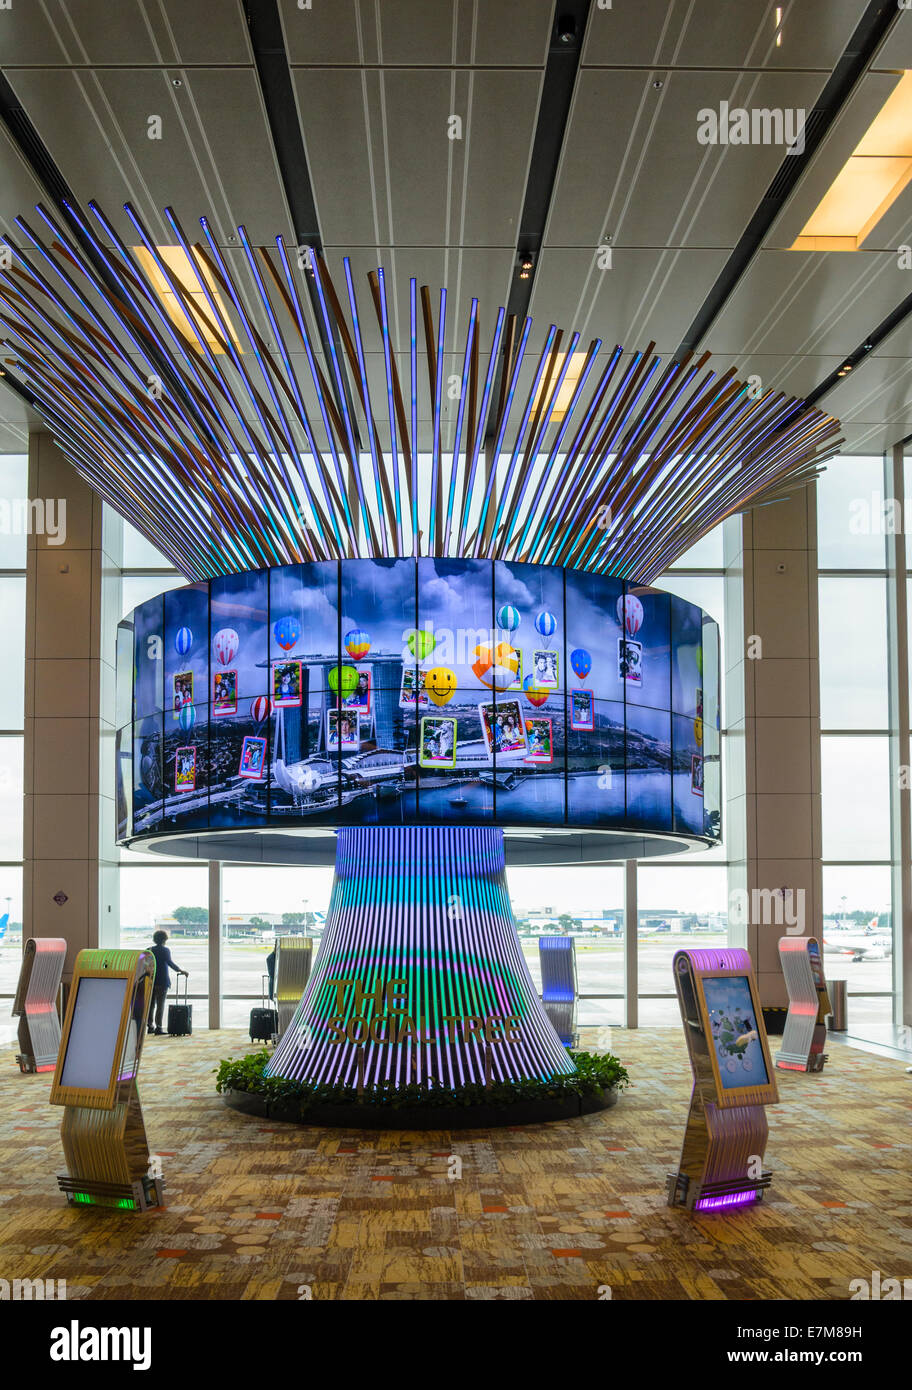 L'arbre social à l'aéroport de Changi, un média interactif afficher, Singapour Banque D'Images